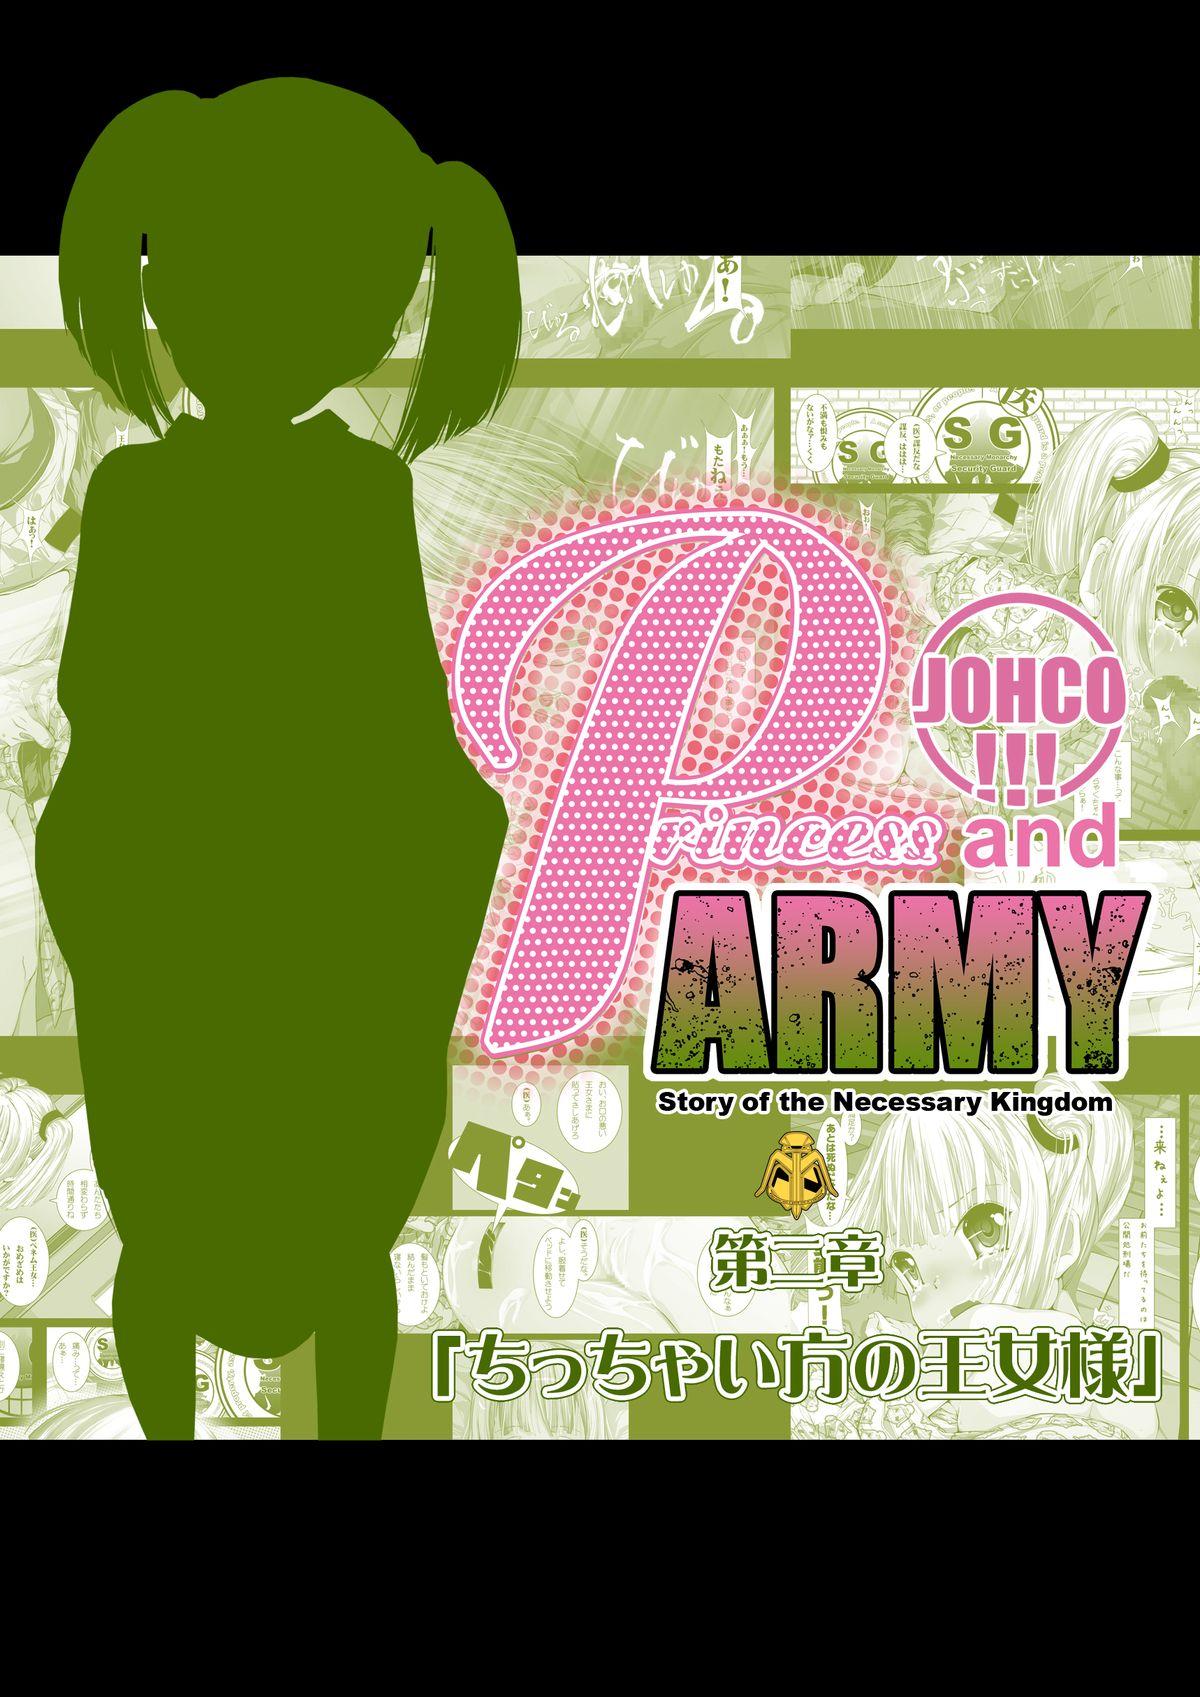 JOHCO/Princess and ARMY 29